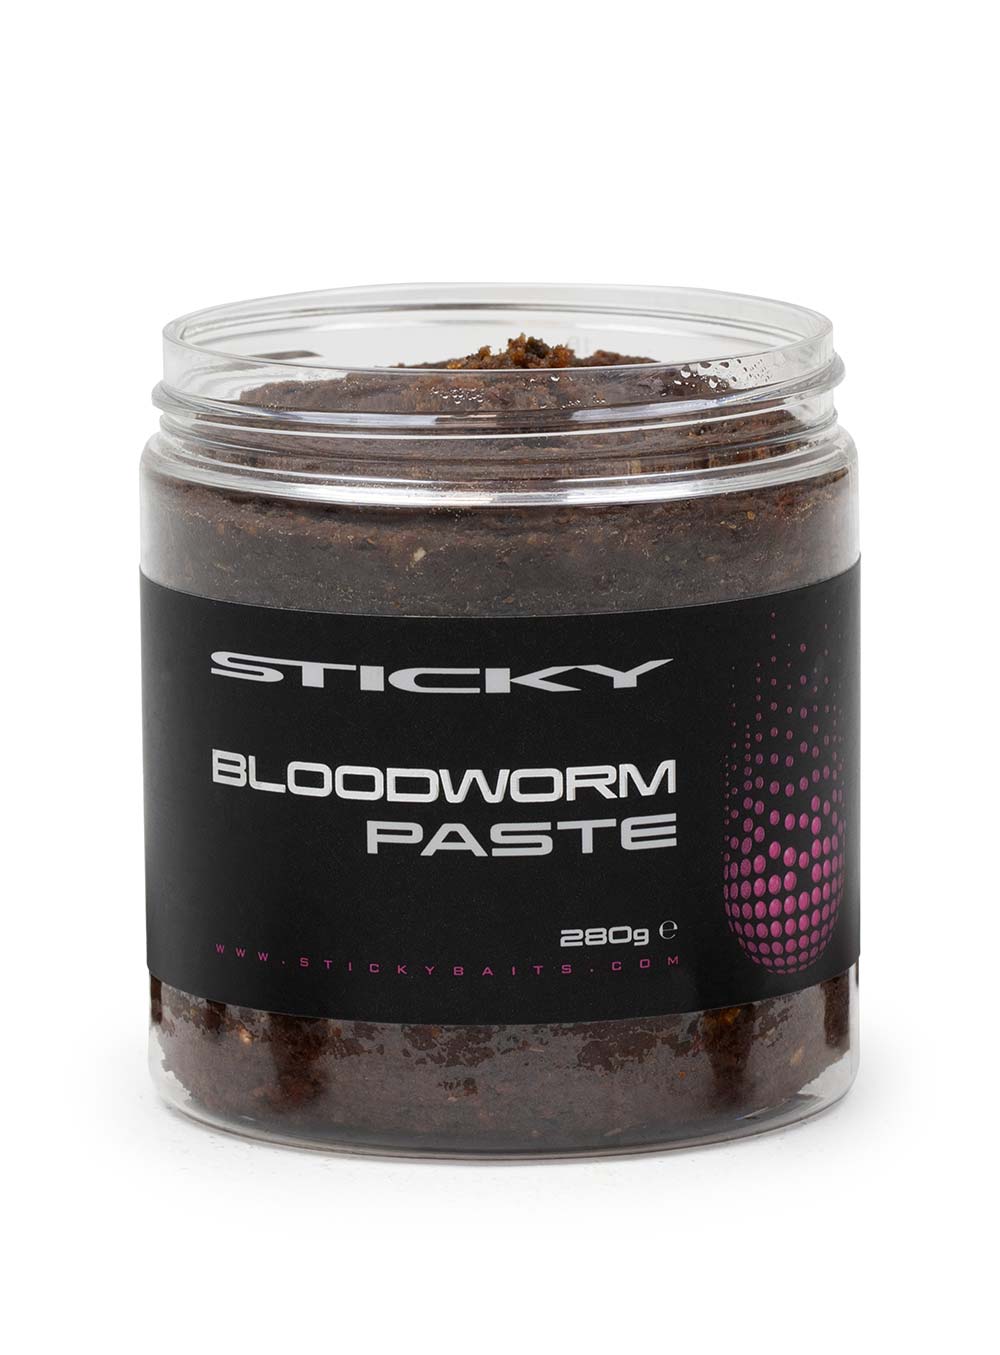 Sticky Baits Bloodworm Paste (280g)